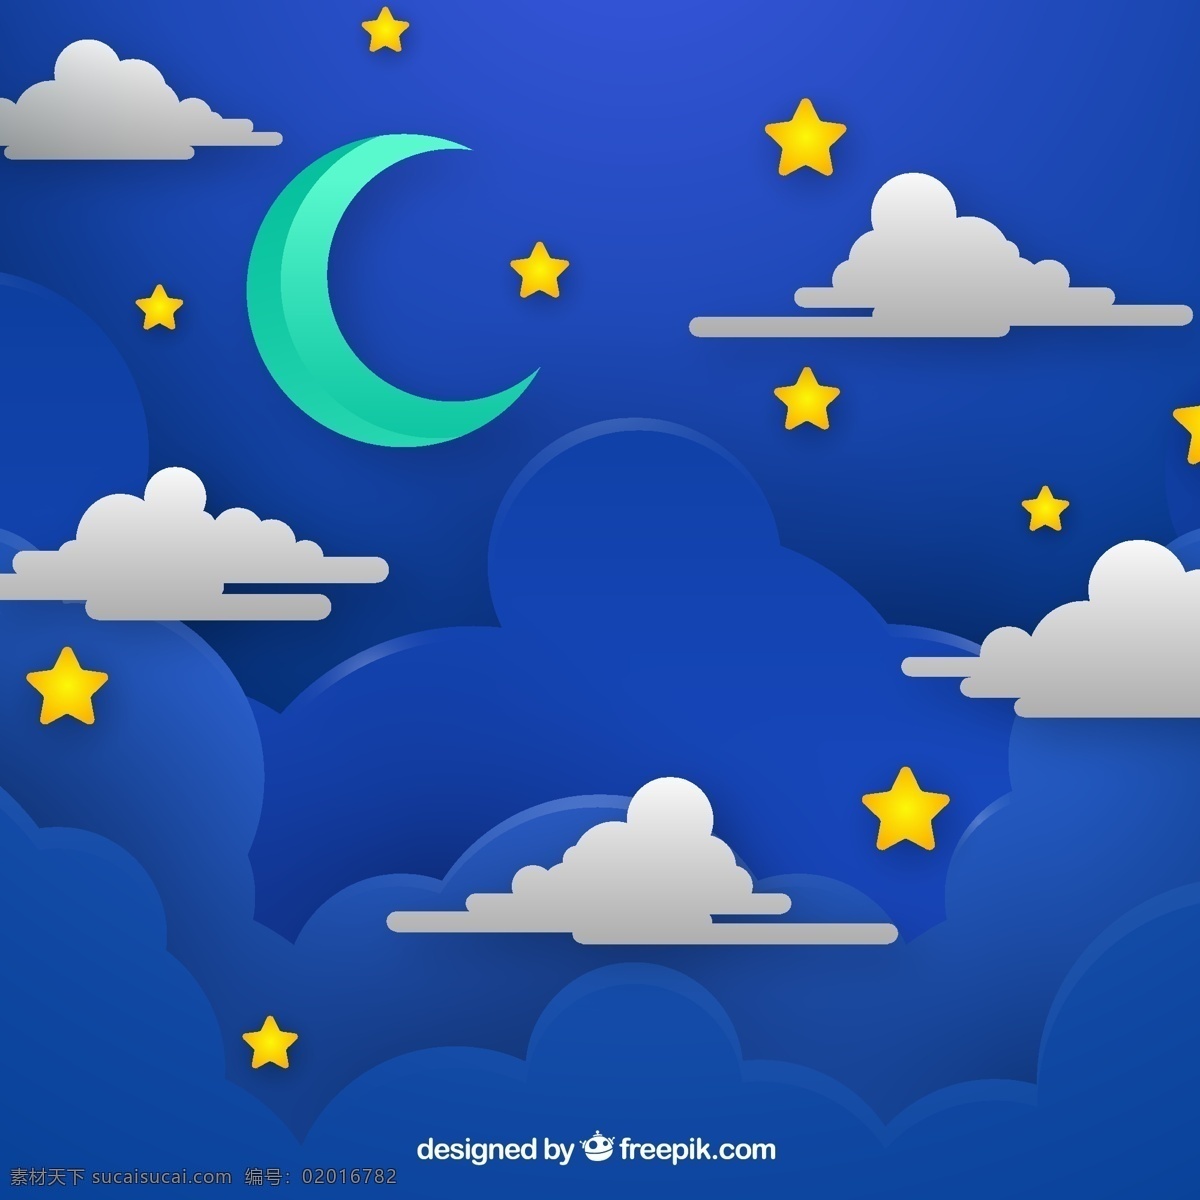 创意 夜晚 天空 月亮 云朵 星星 动漫动画 风景漫画